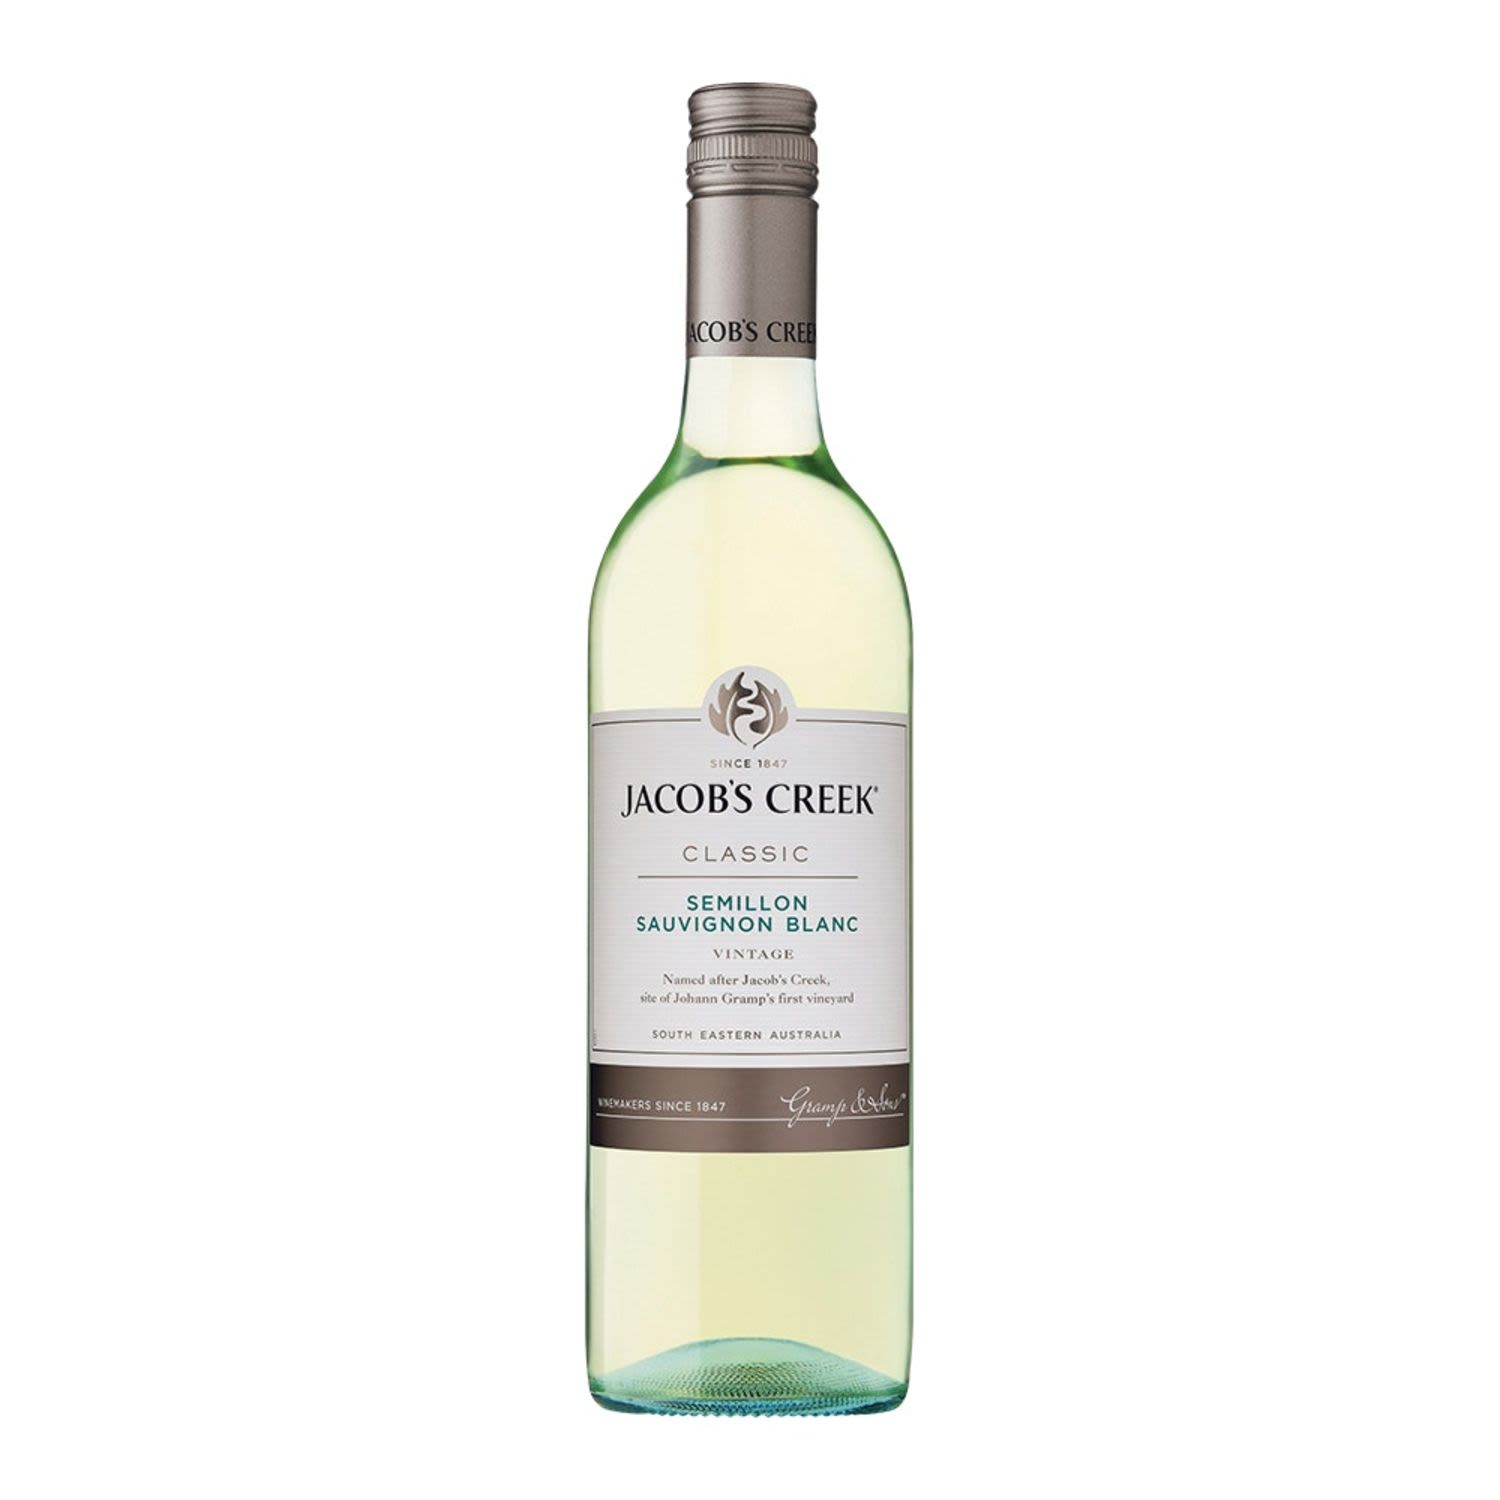 Jacob's Creek Classic Semillon Sauvignon Blanc 750mL Bottle